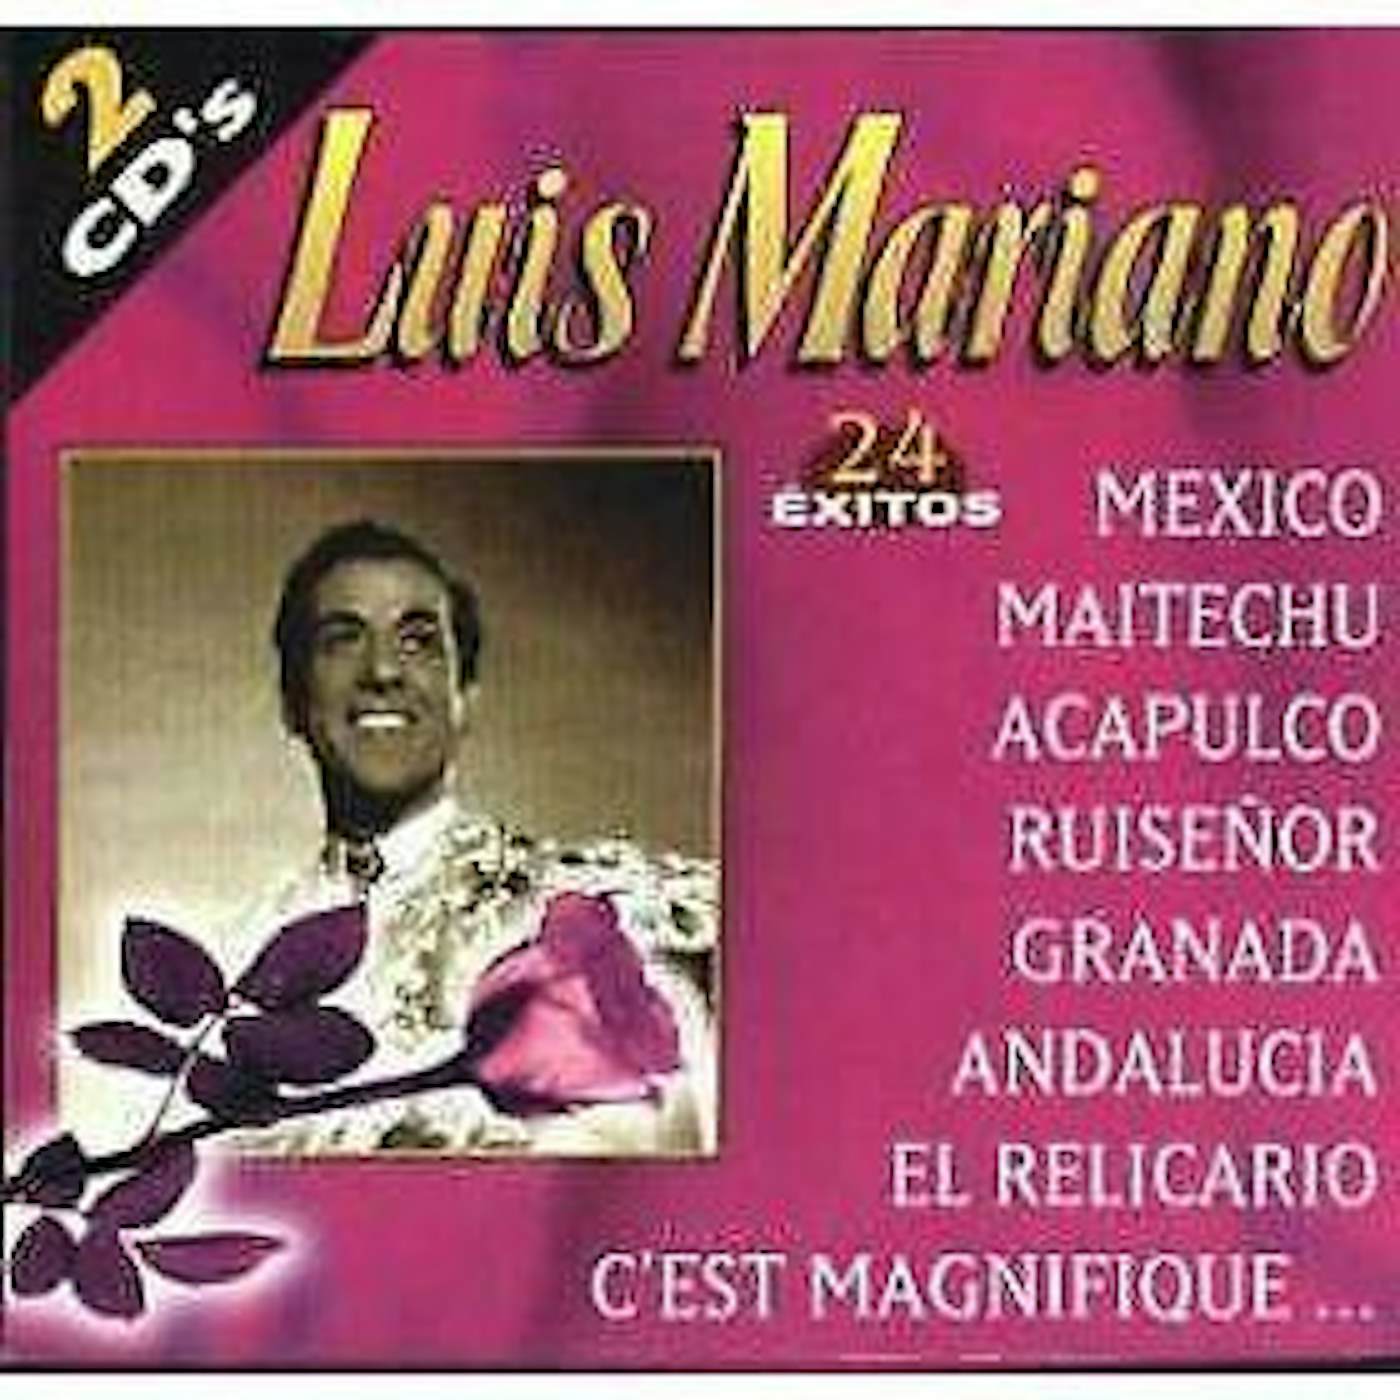 Luis Mariano 24 EXITOS CD